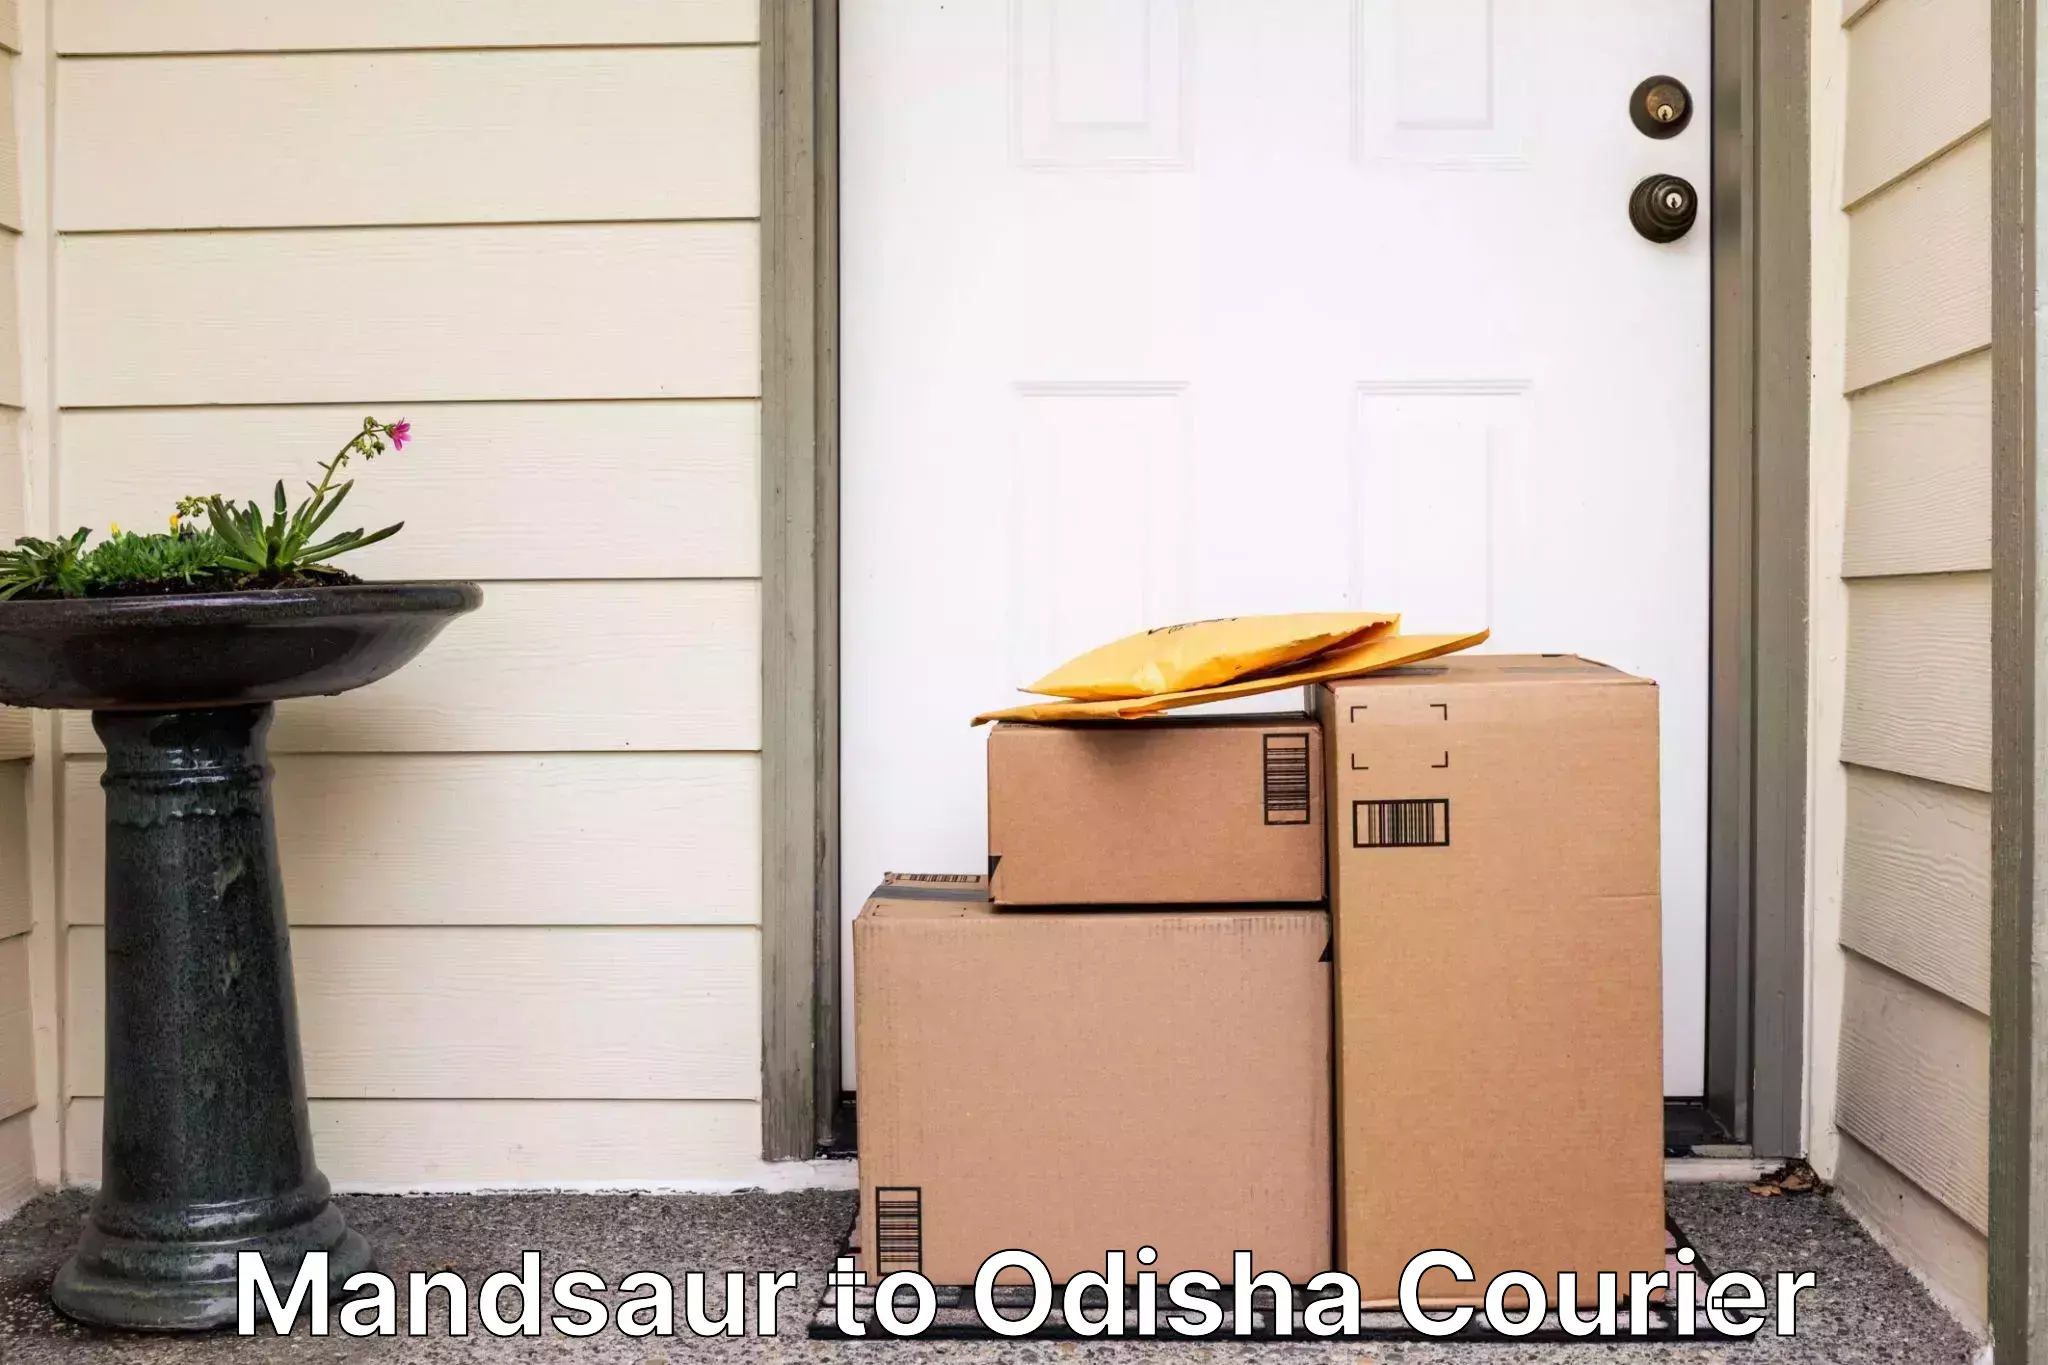 24-hour courier service Mandsaur to Odisha